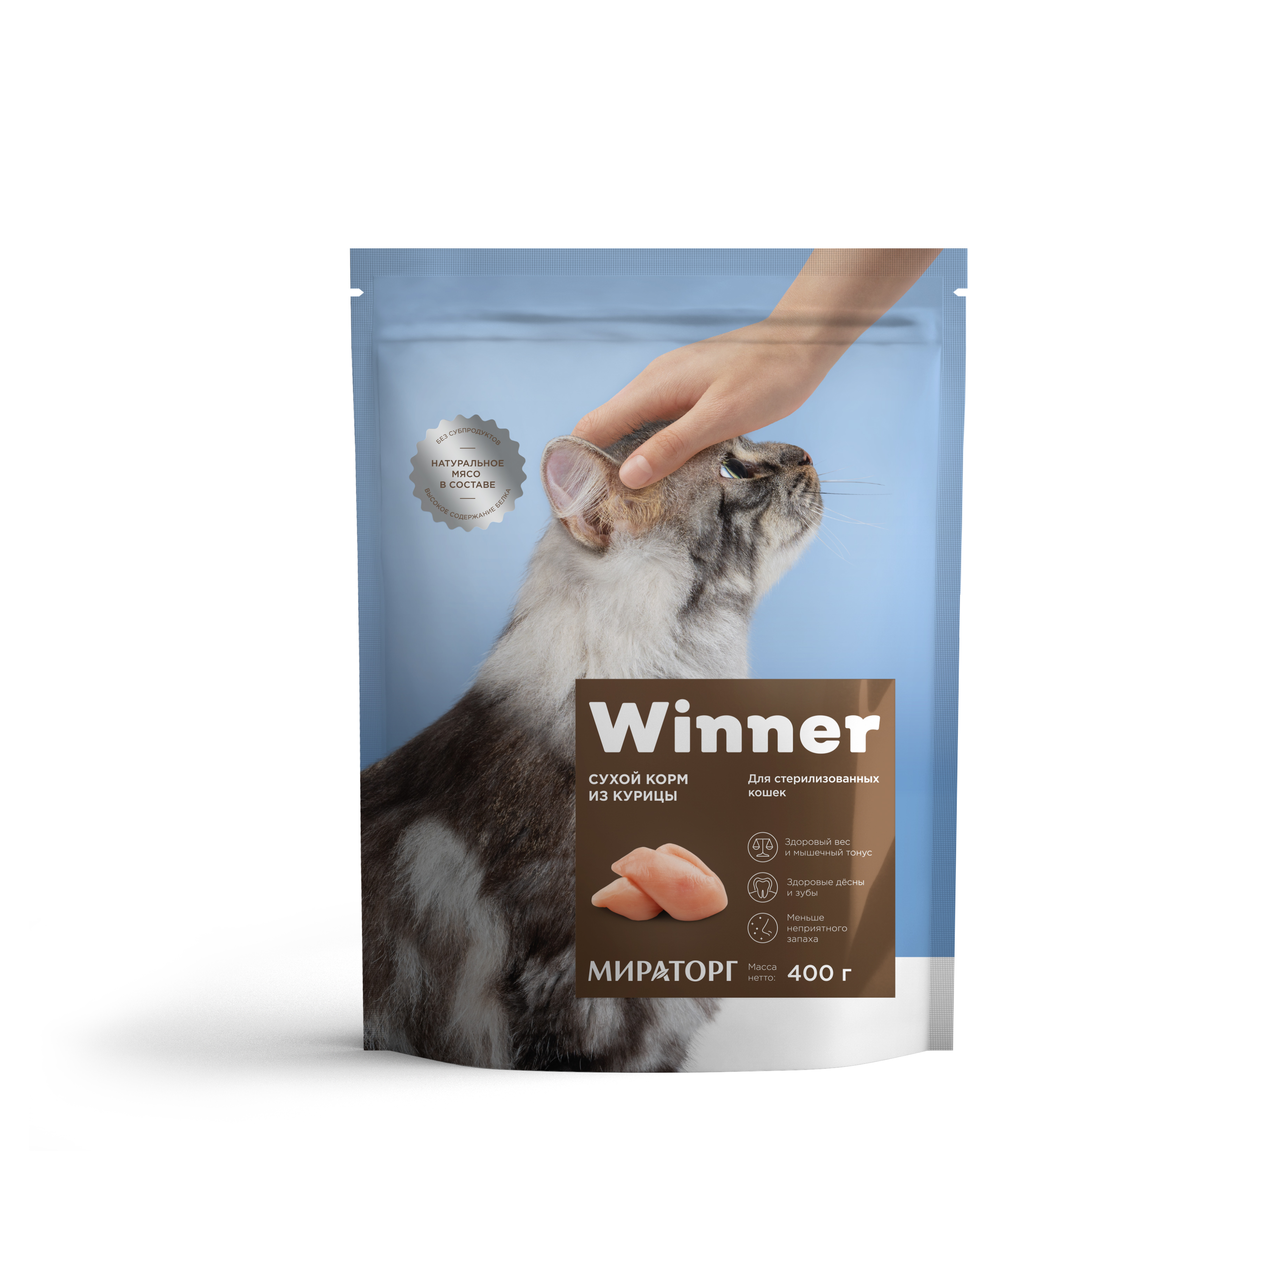 Сухой корм WINNER для стерилизованных кошек, из курицы, 400 г